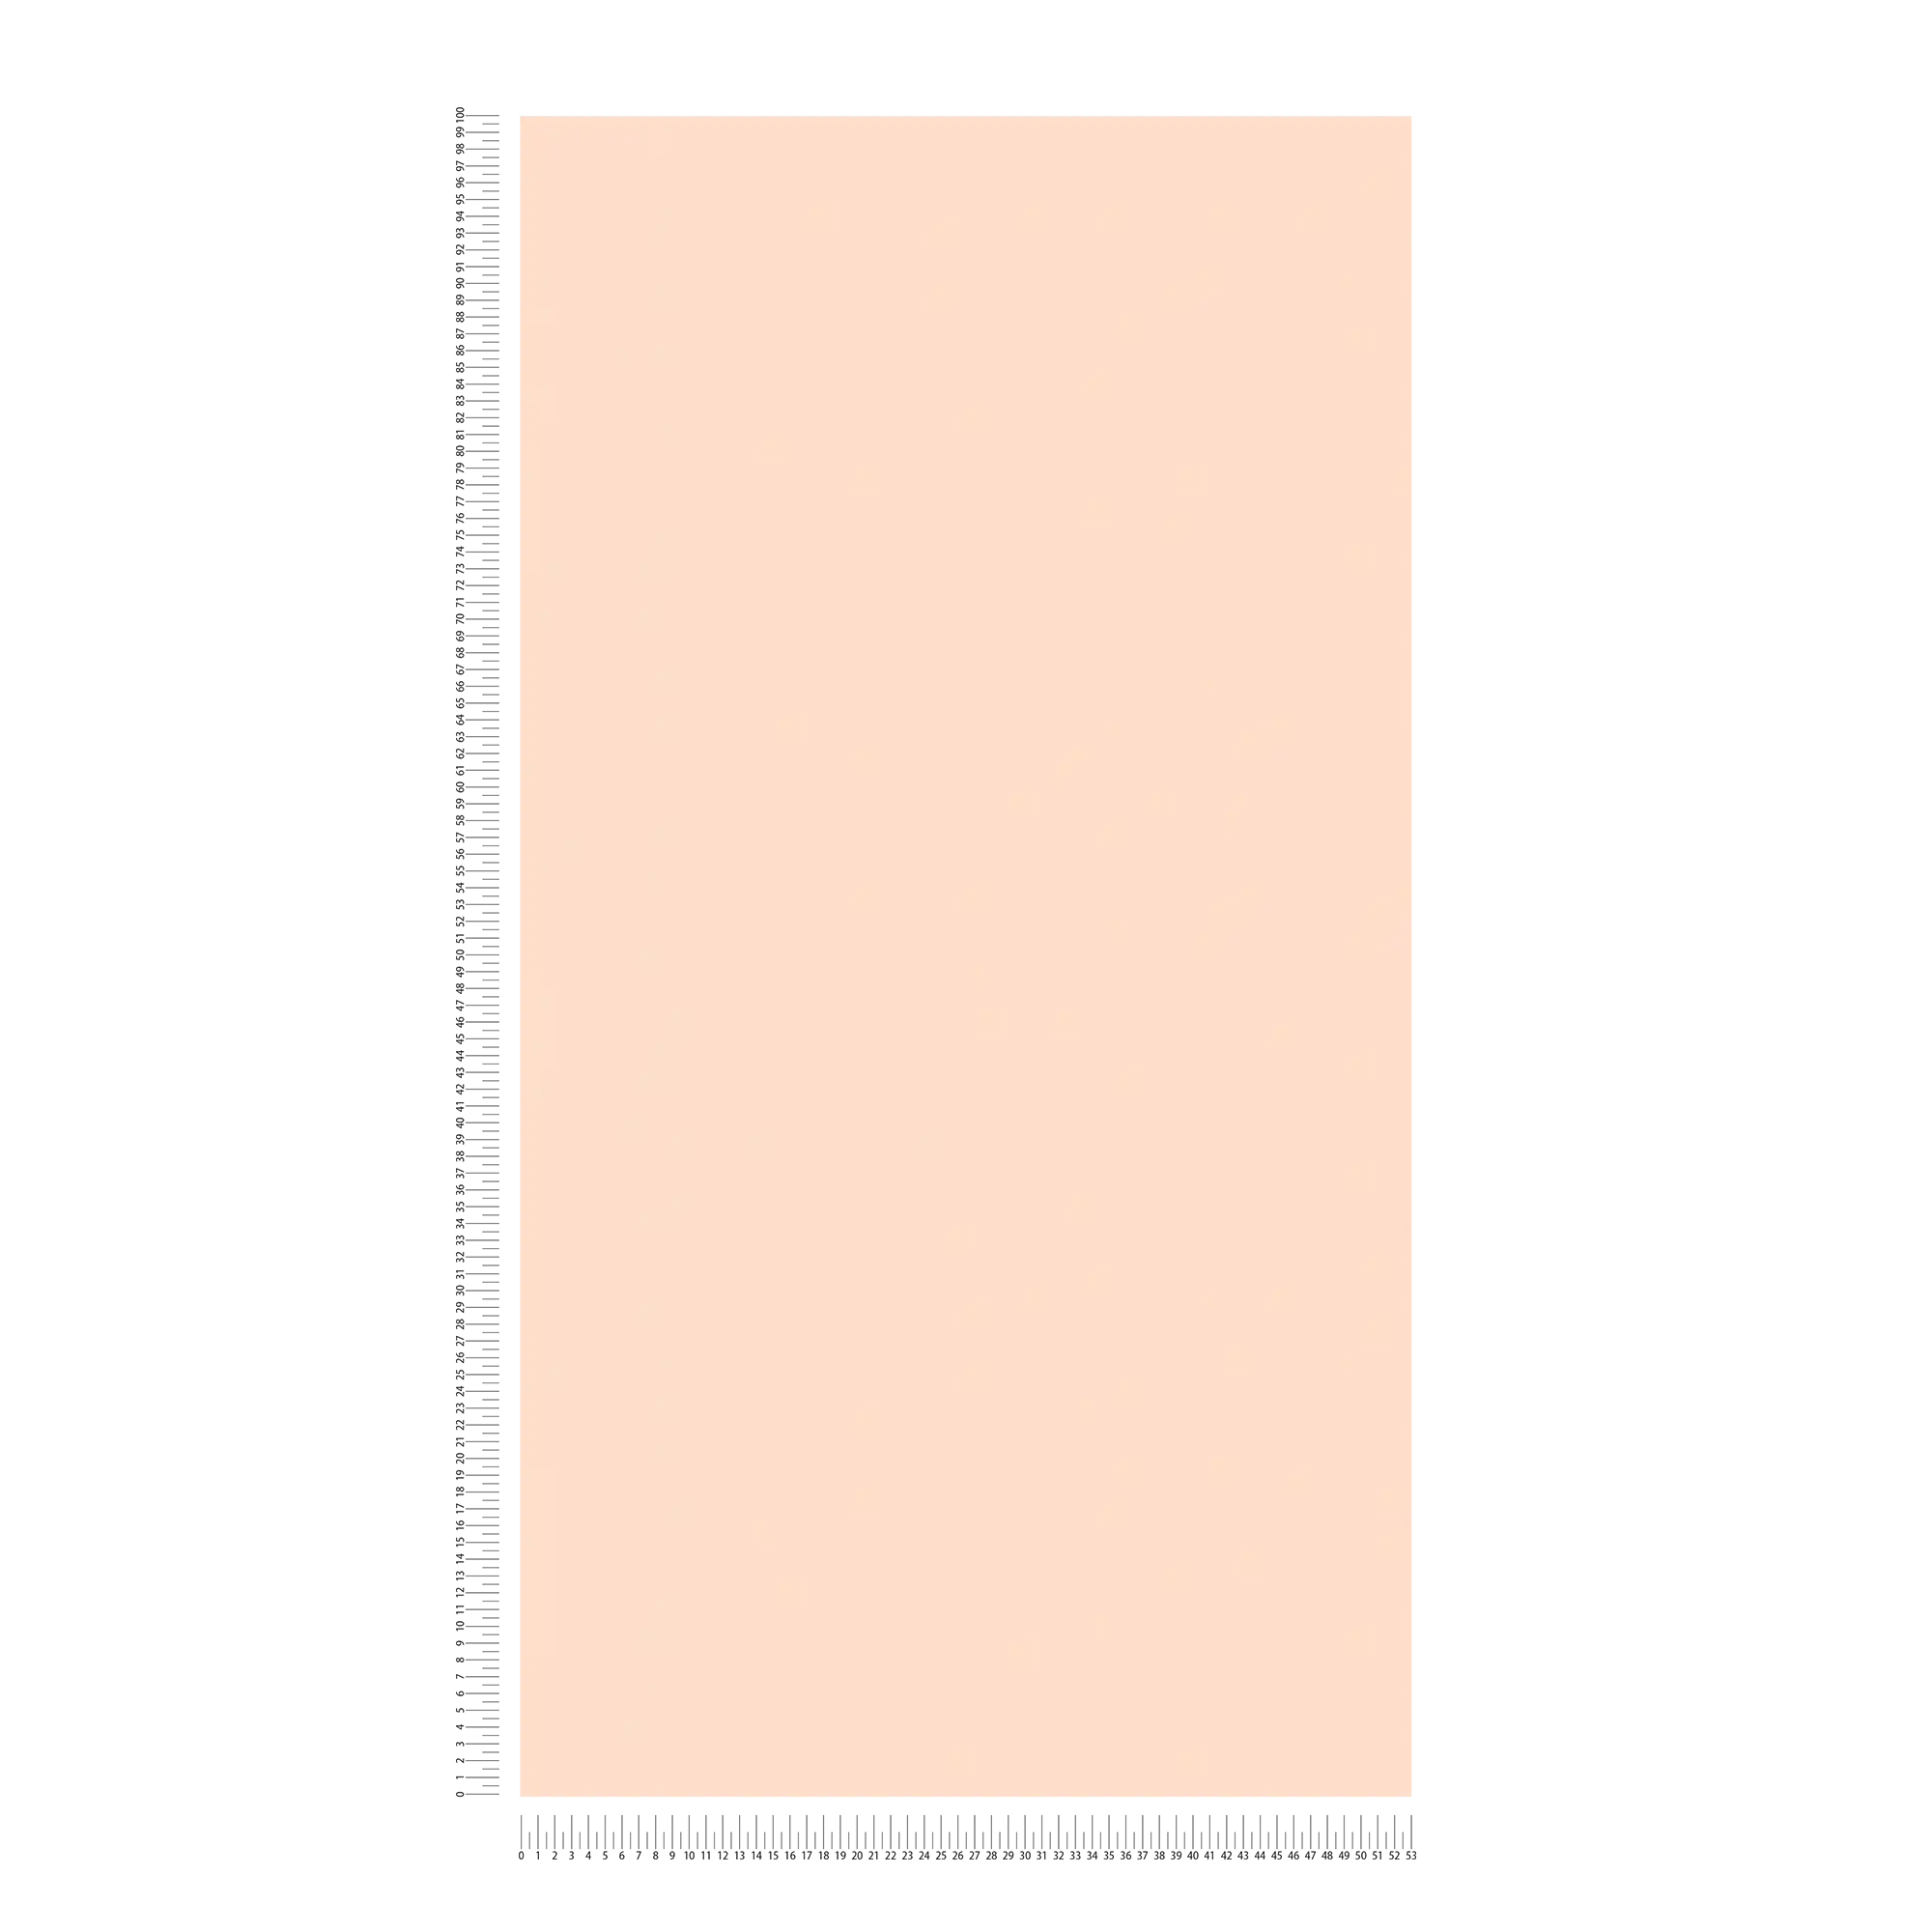             Papier peint uni avec surface mate - crème, rose
        